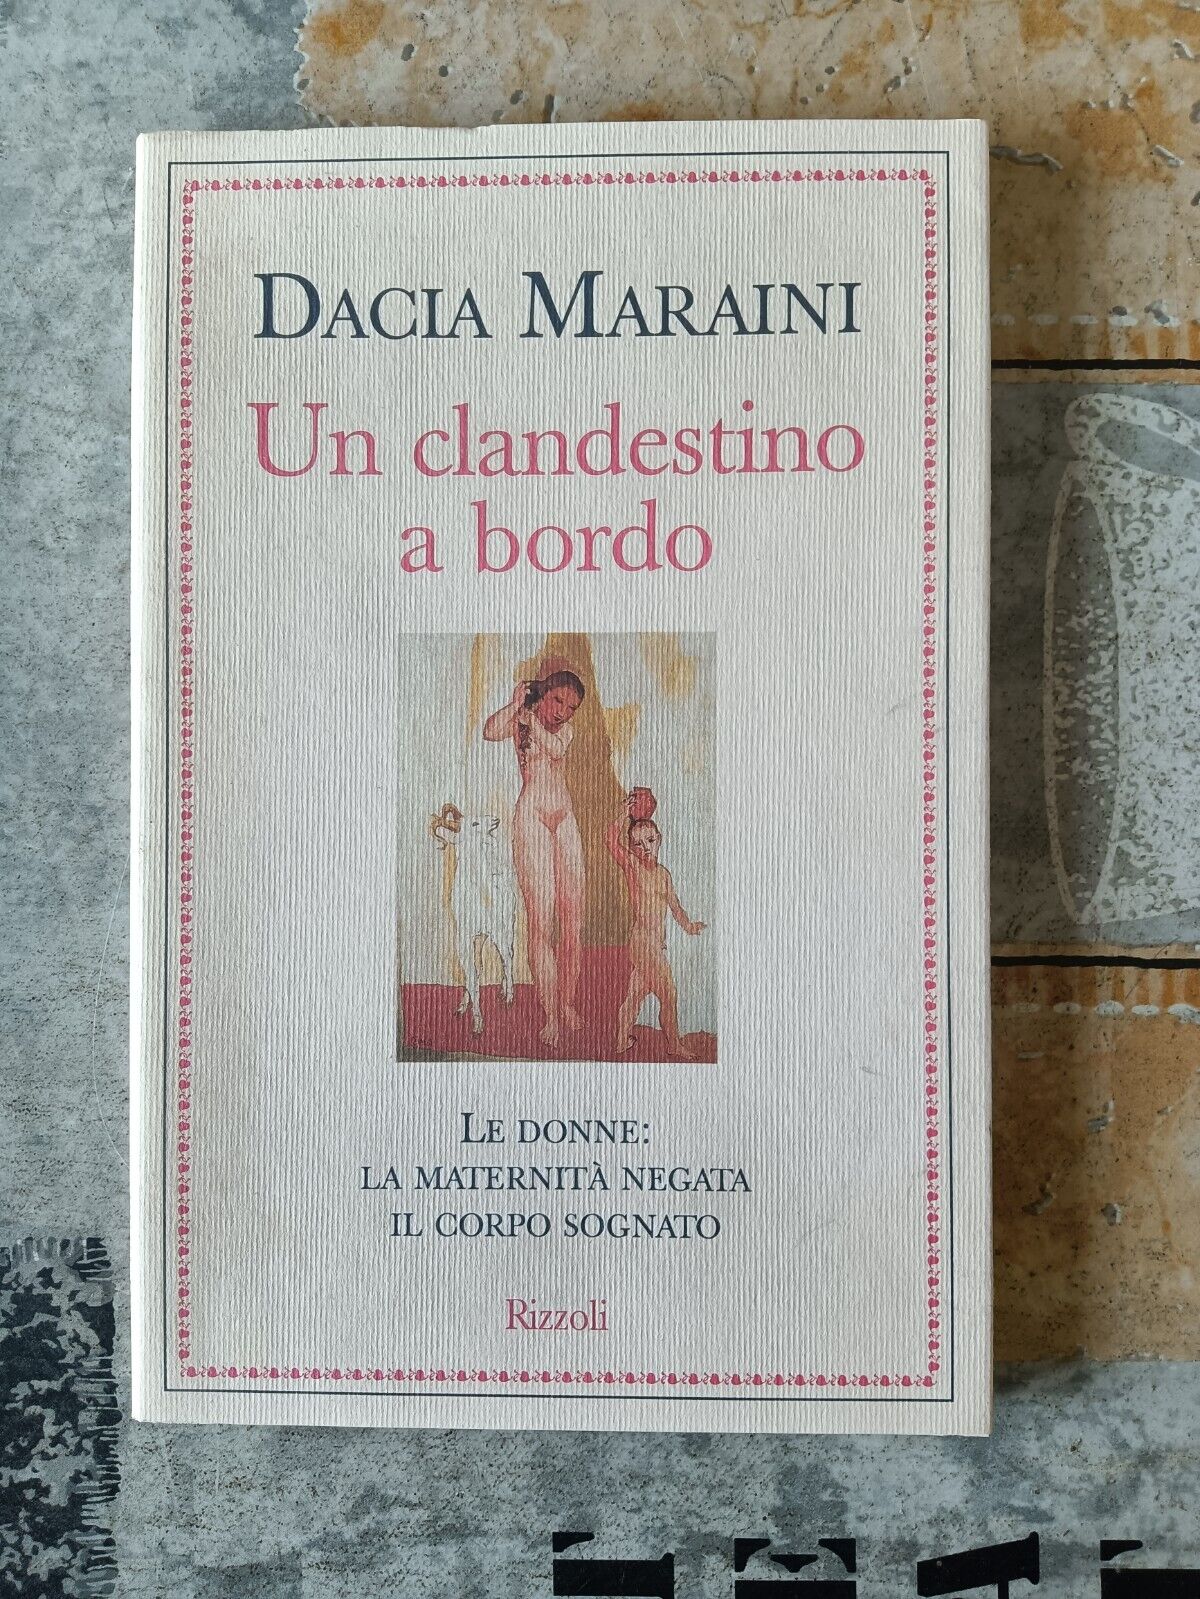 Un clandestino a bordo | Dacia Maraini - Rizzoli